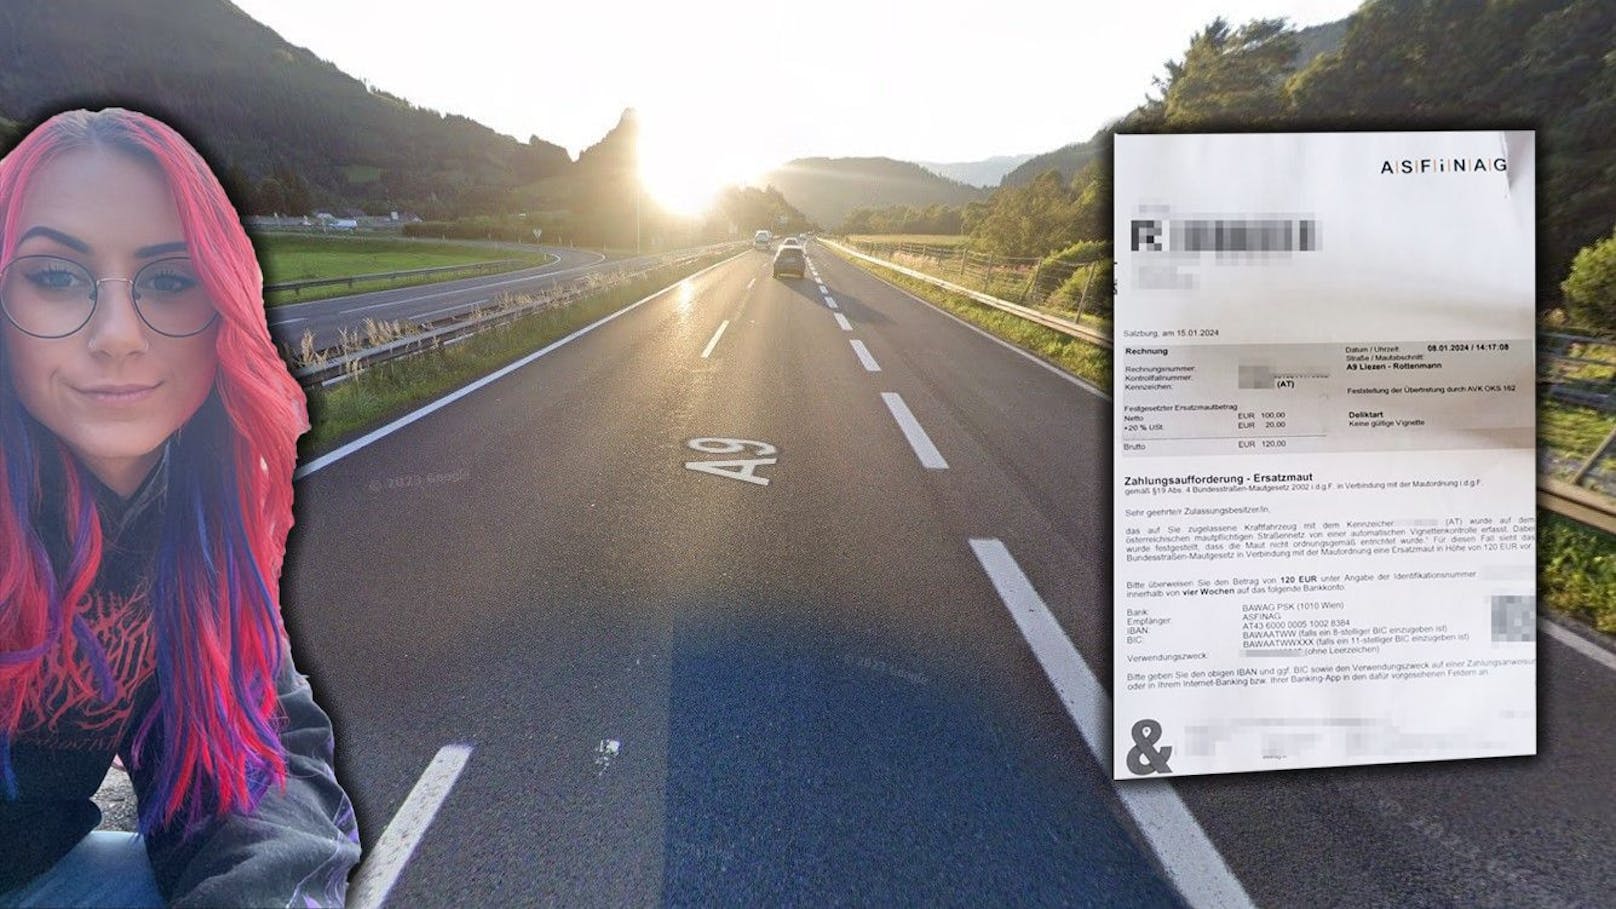 <strong>08.02.2024: Frau kauft Vignette, muss sofort Autobahn-Strafe zahlen.</strong> Anfang Jänner fuhr eine Frau über die A9 in der Steiermark, zuvor hatte sie sich eine Tagesvignette gekauft. Trotzdem wurde sie nun abgestraft. <a rel="nofollow" data-li-document-ref="120018361" href="https://www.heute.at/s/frau-kauft-vignette-muss-sofort-autobahn-strafe-zahlen-120018361">Alle Infos hier &gt;&gt;&gt;</a>